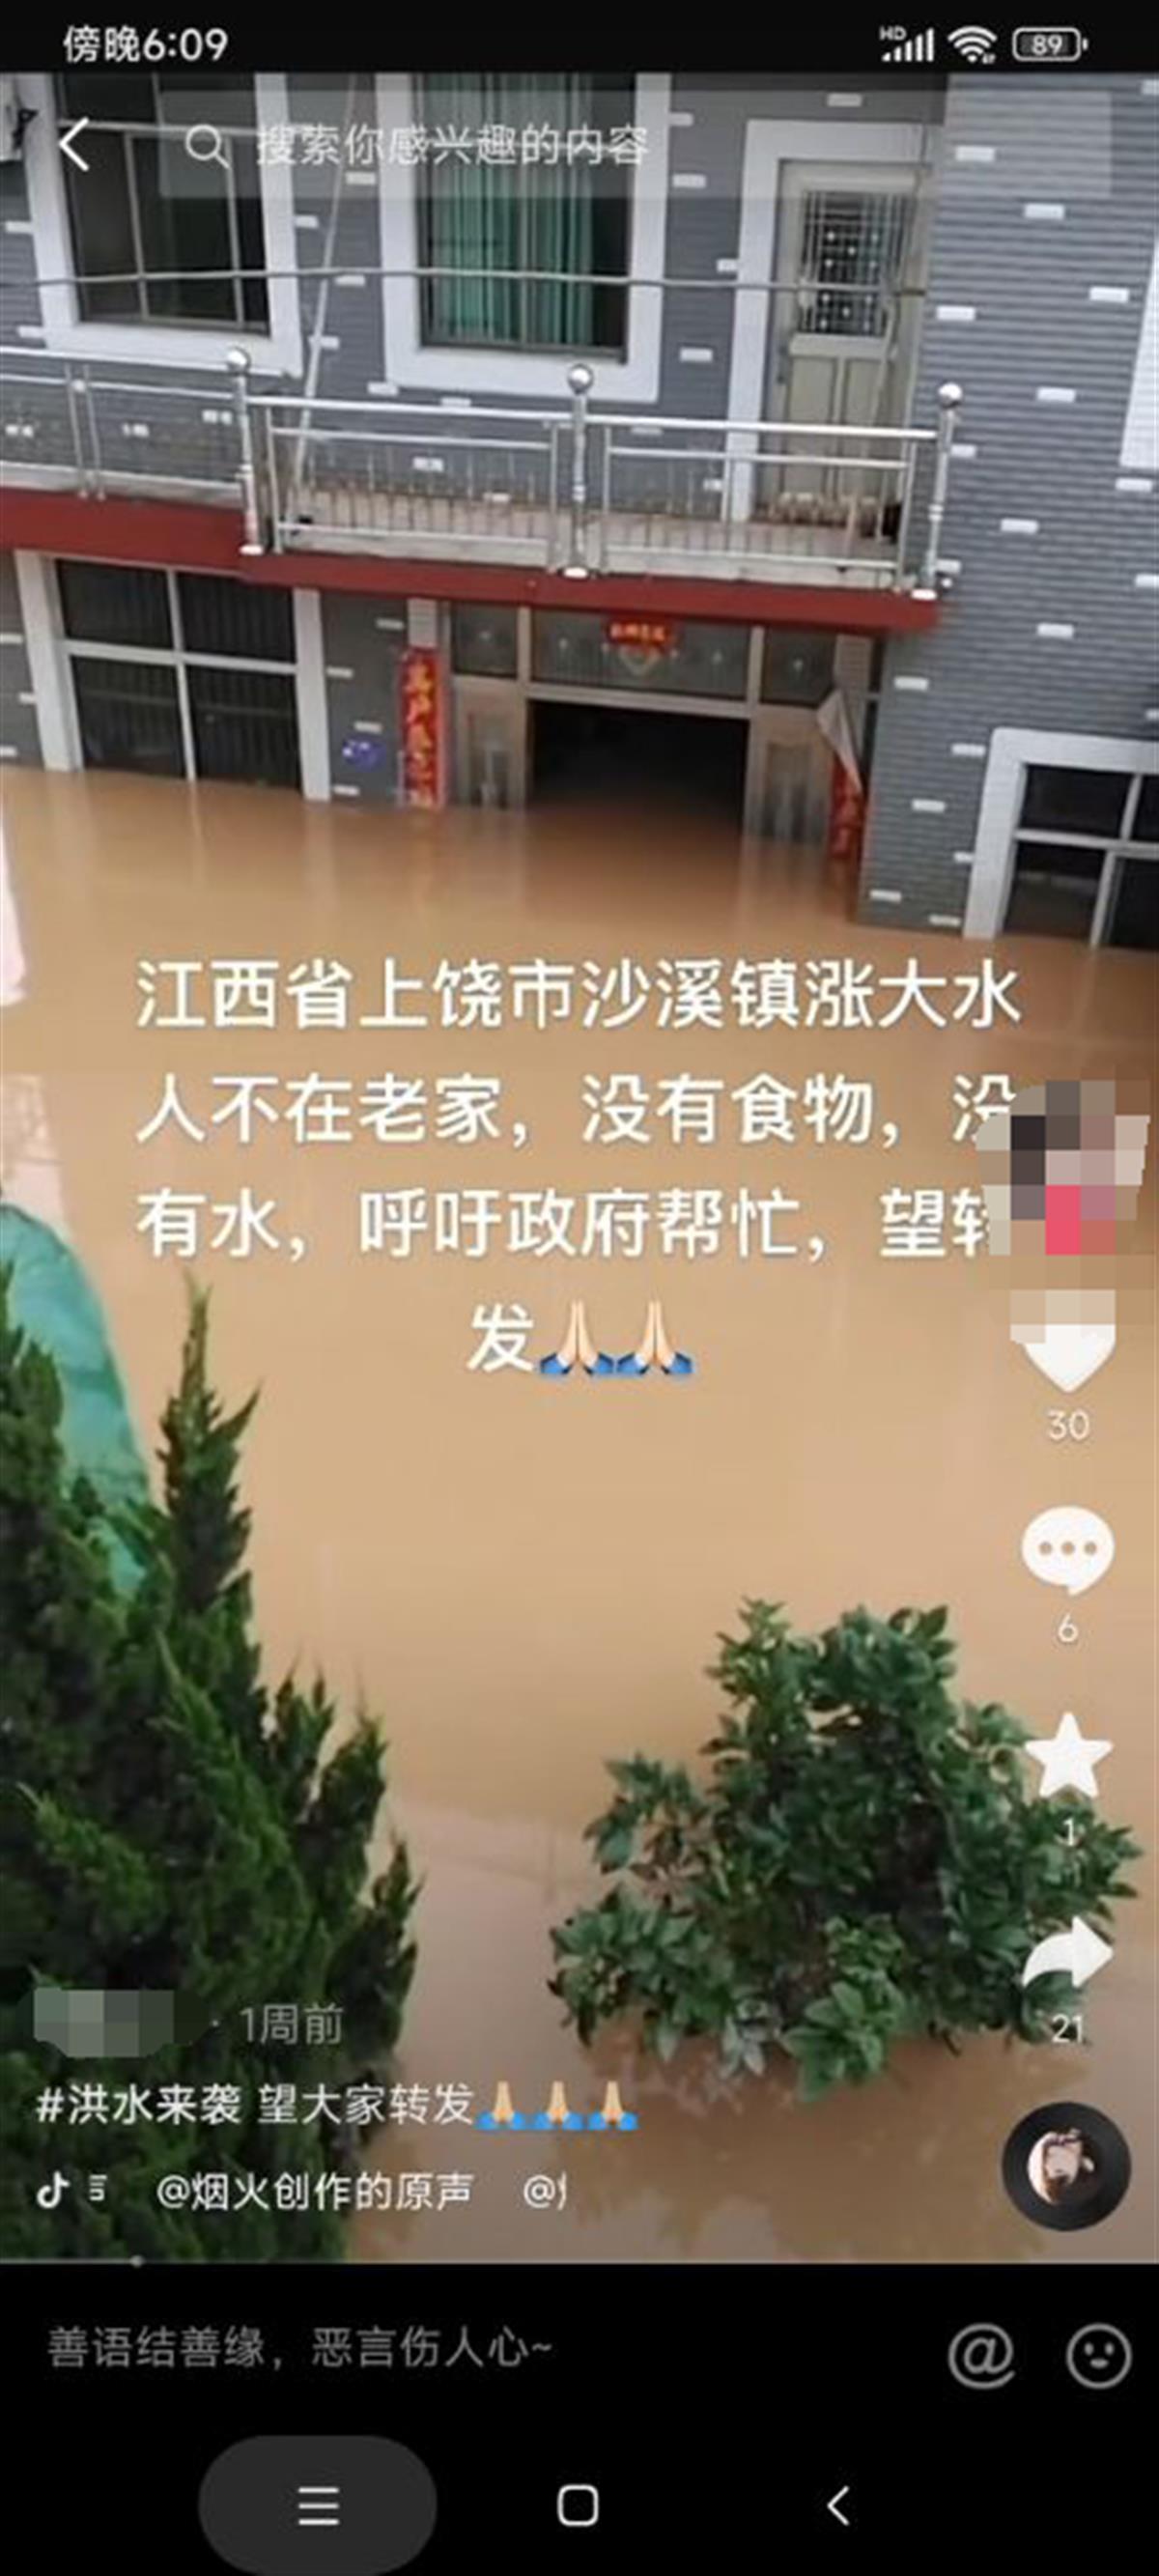 今日热点事件@古镇被淹,受灾商户称未收到泄洪通知